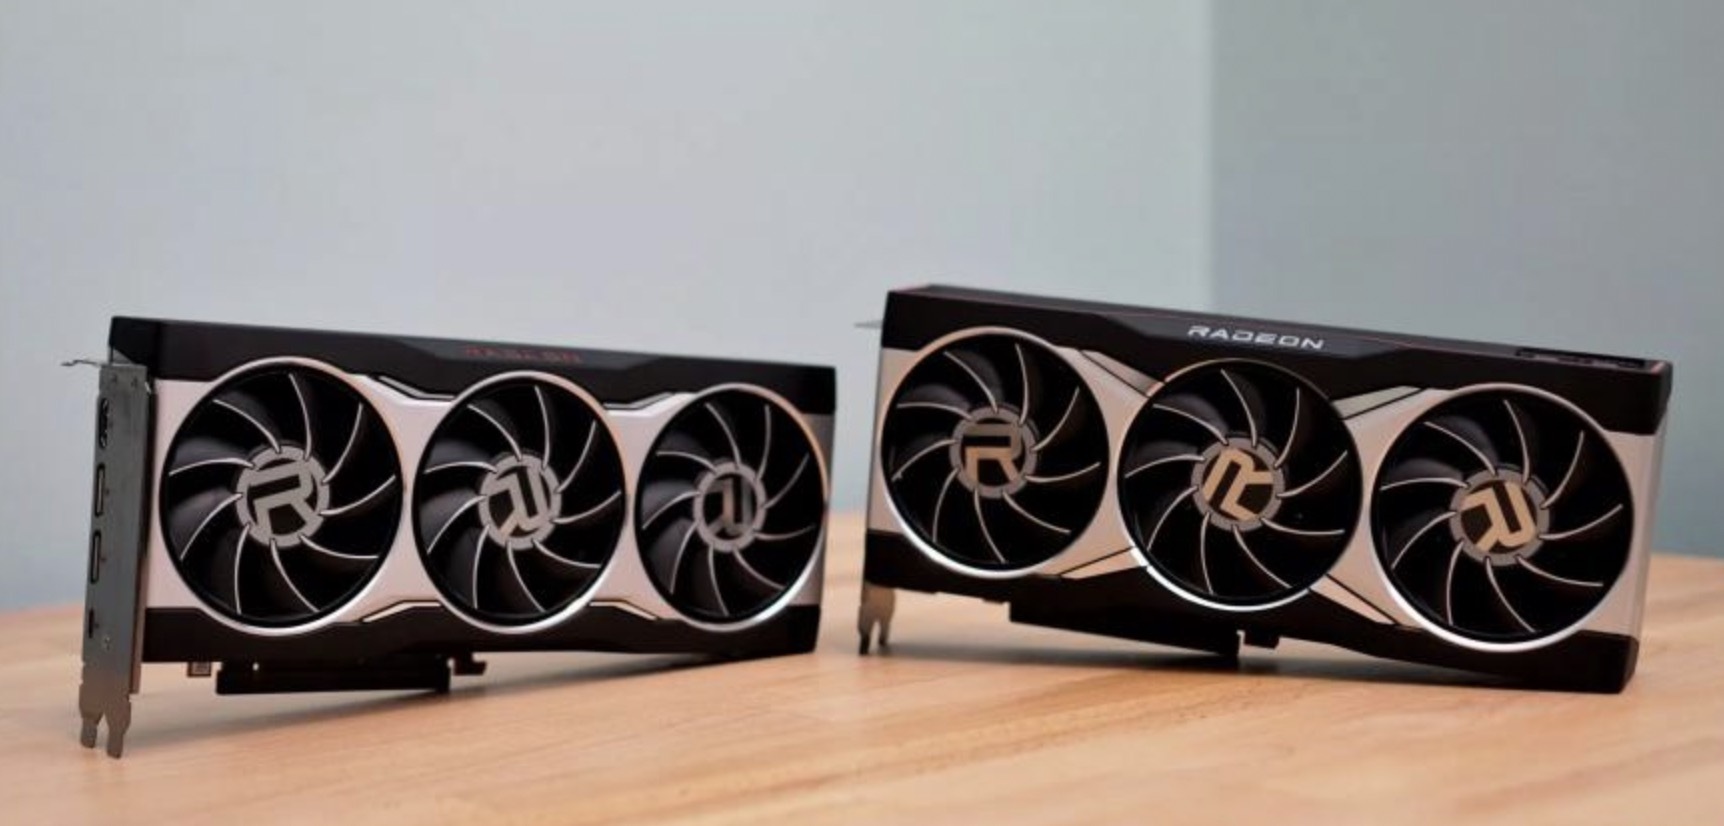 Причина частых поломок видеокарт Radeon RX 6000 оказалась в хранении устройств в помещении с высокой влажностью